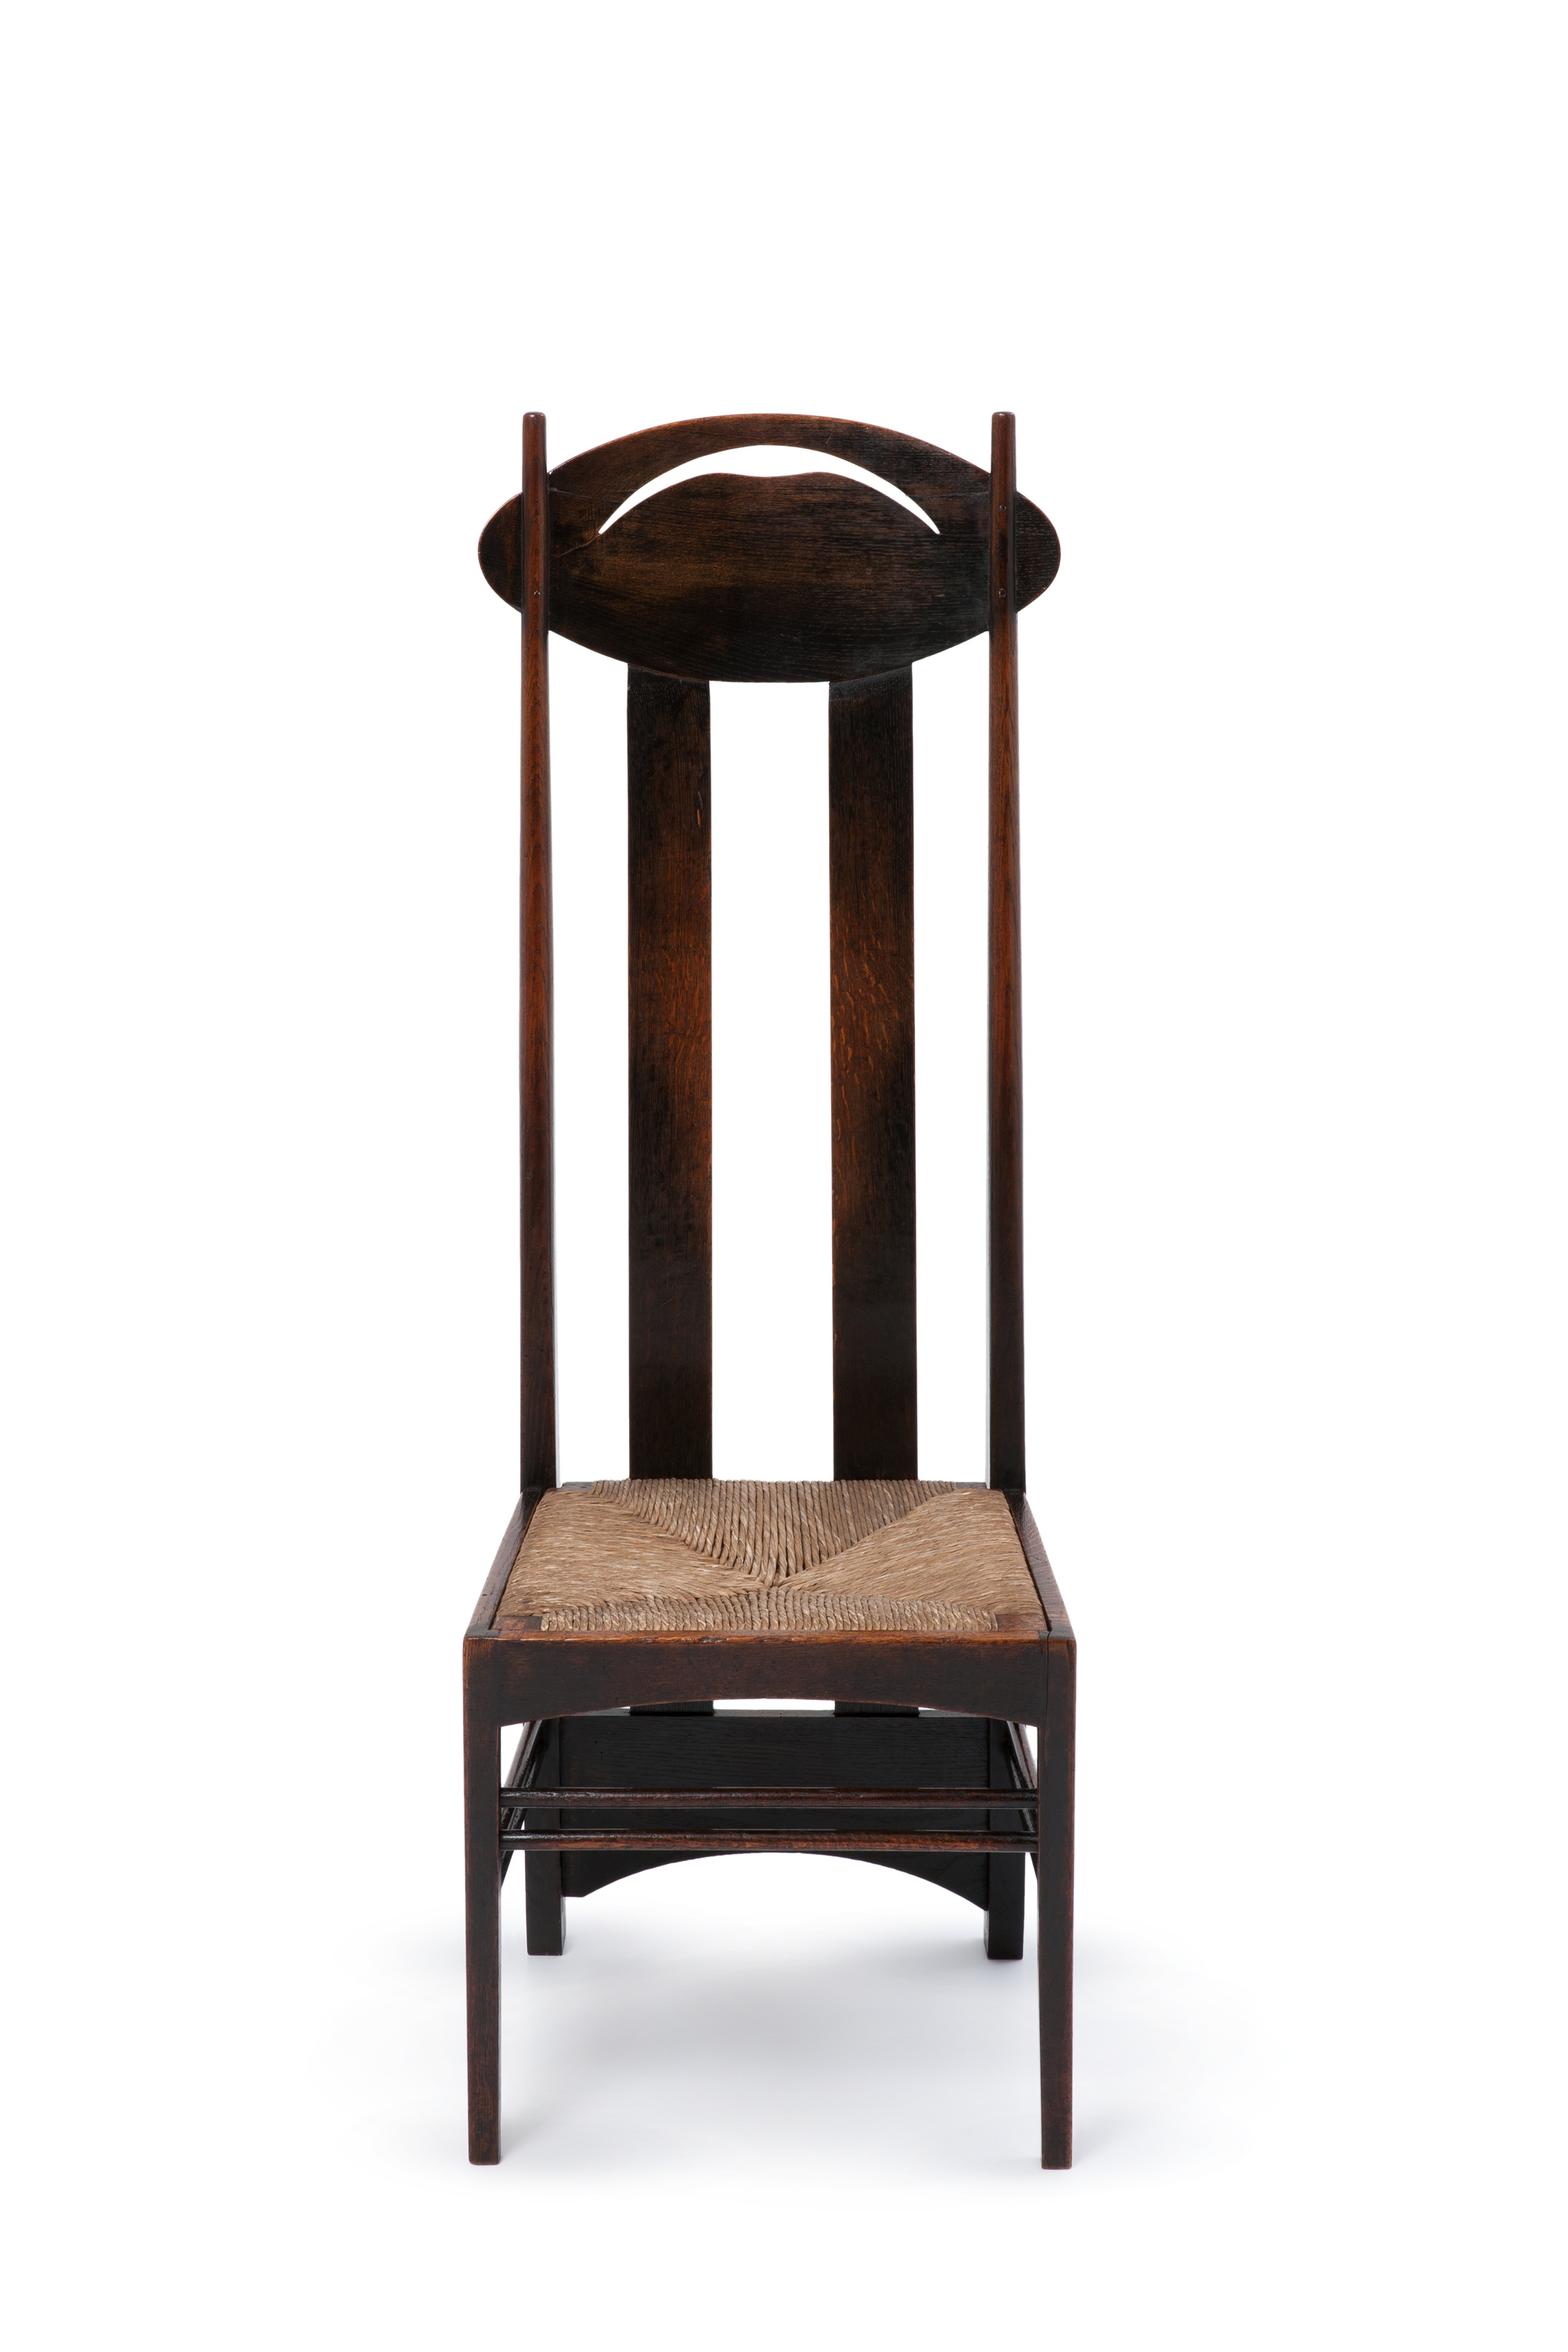 'Argyle' chair by Charles Rennie Mackintosh